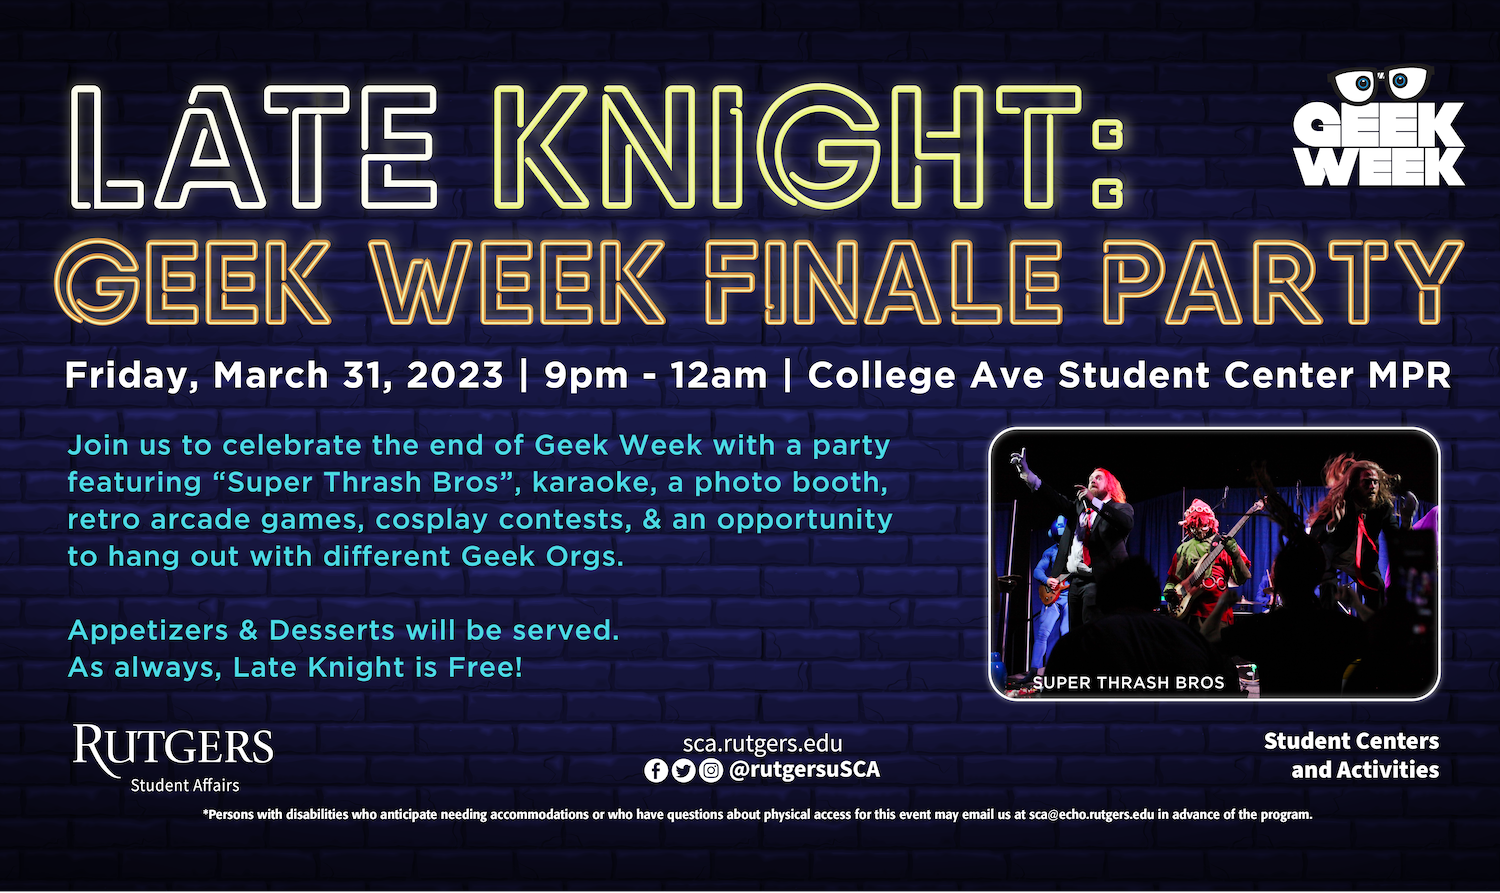 Late Knight Geek Week Finale